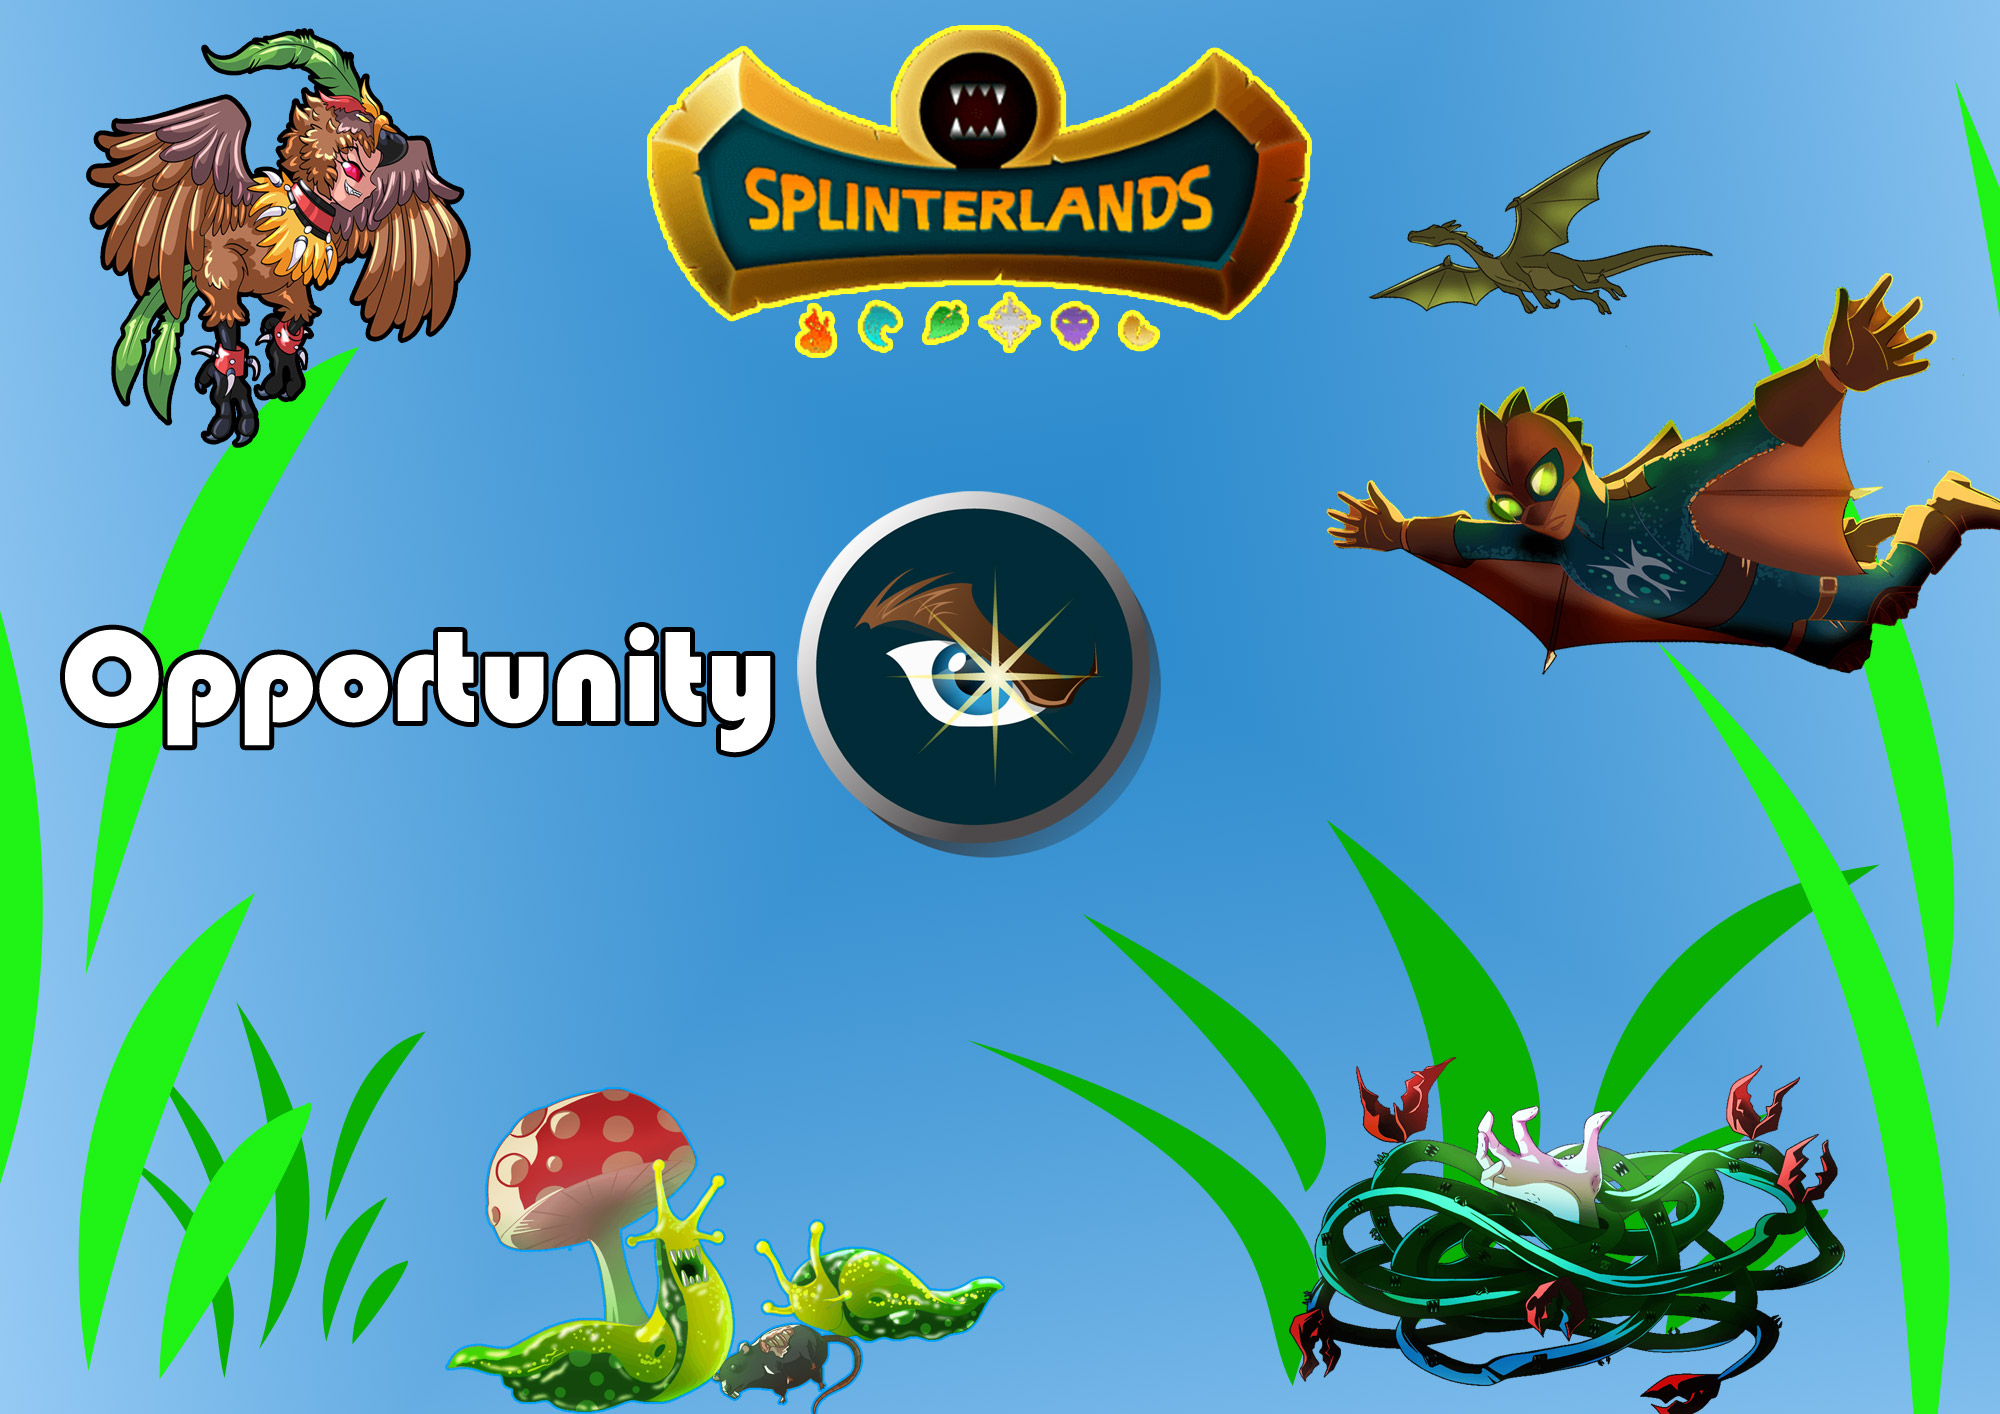 opportunity-banner.jpg